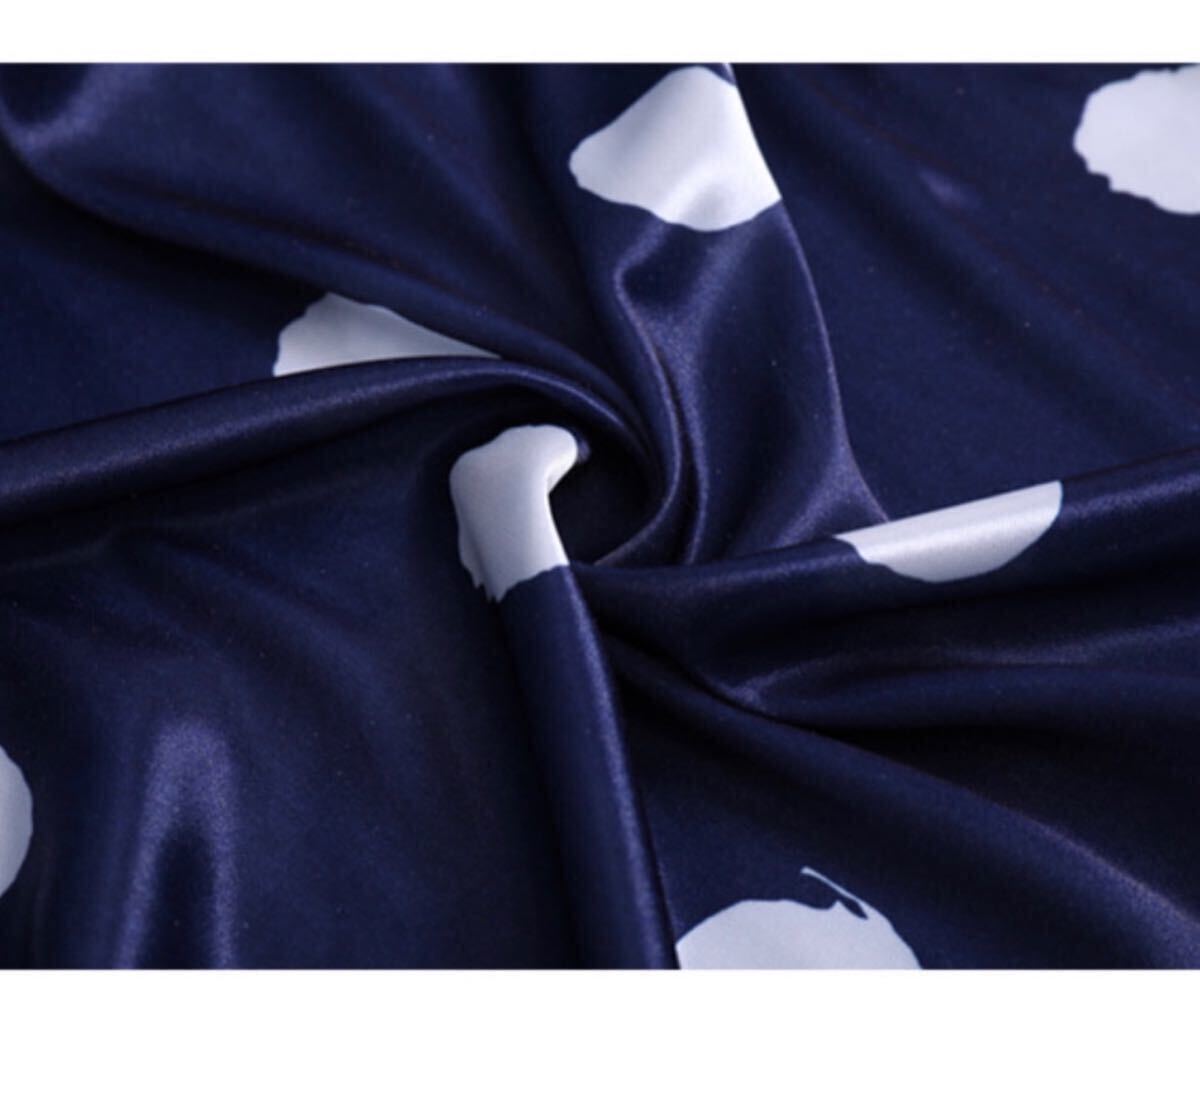 ナイトウェア ルームウェア パジャマ 部屋着 水玉 青 ブルー サテン ショートパンツ シルクタッチ 半ズボン M L 2枚セット 花柄